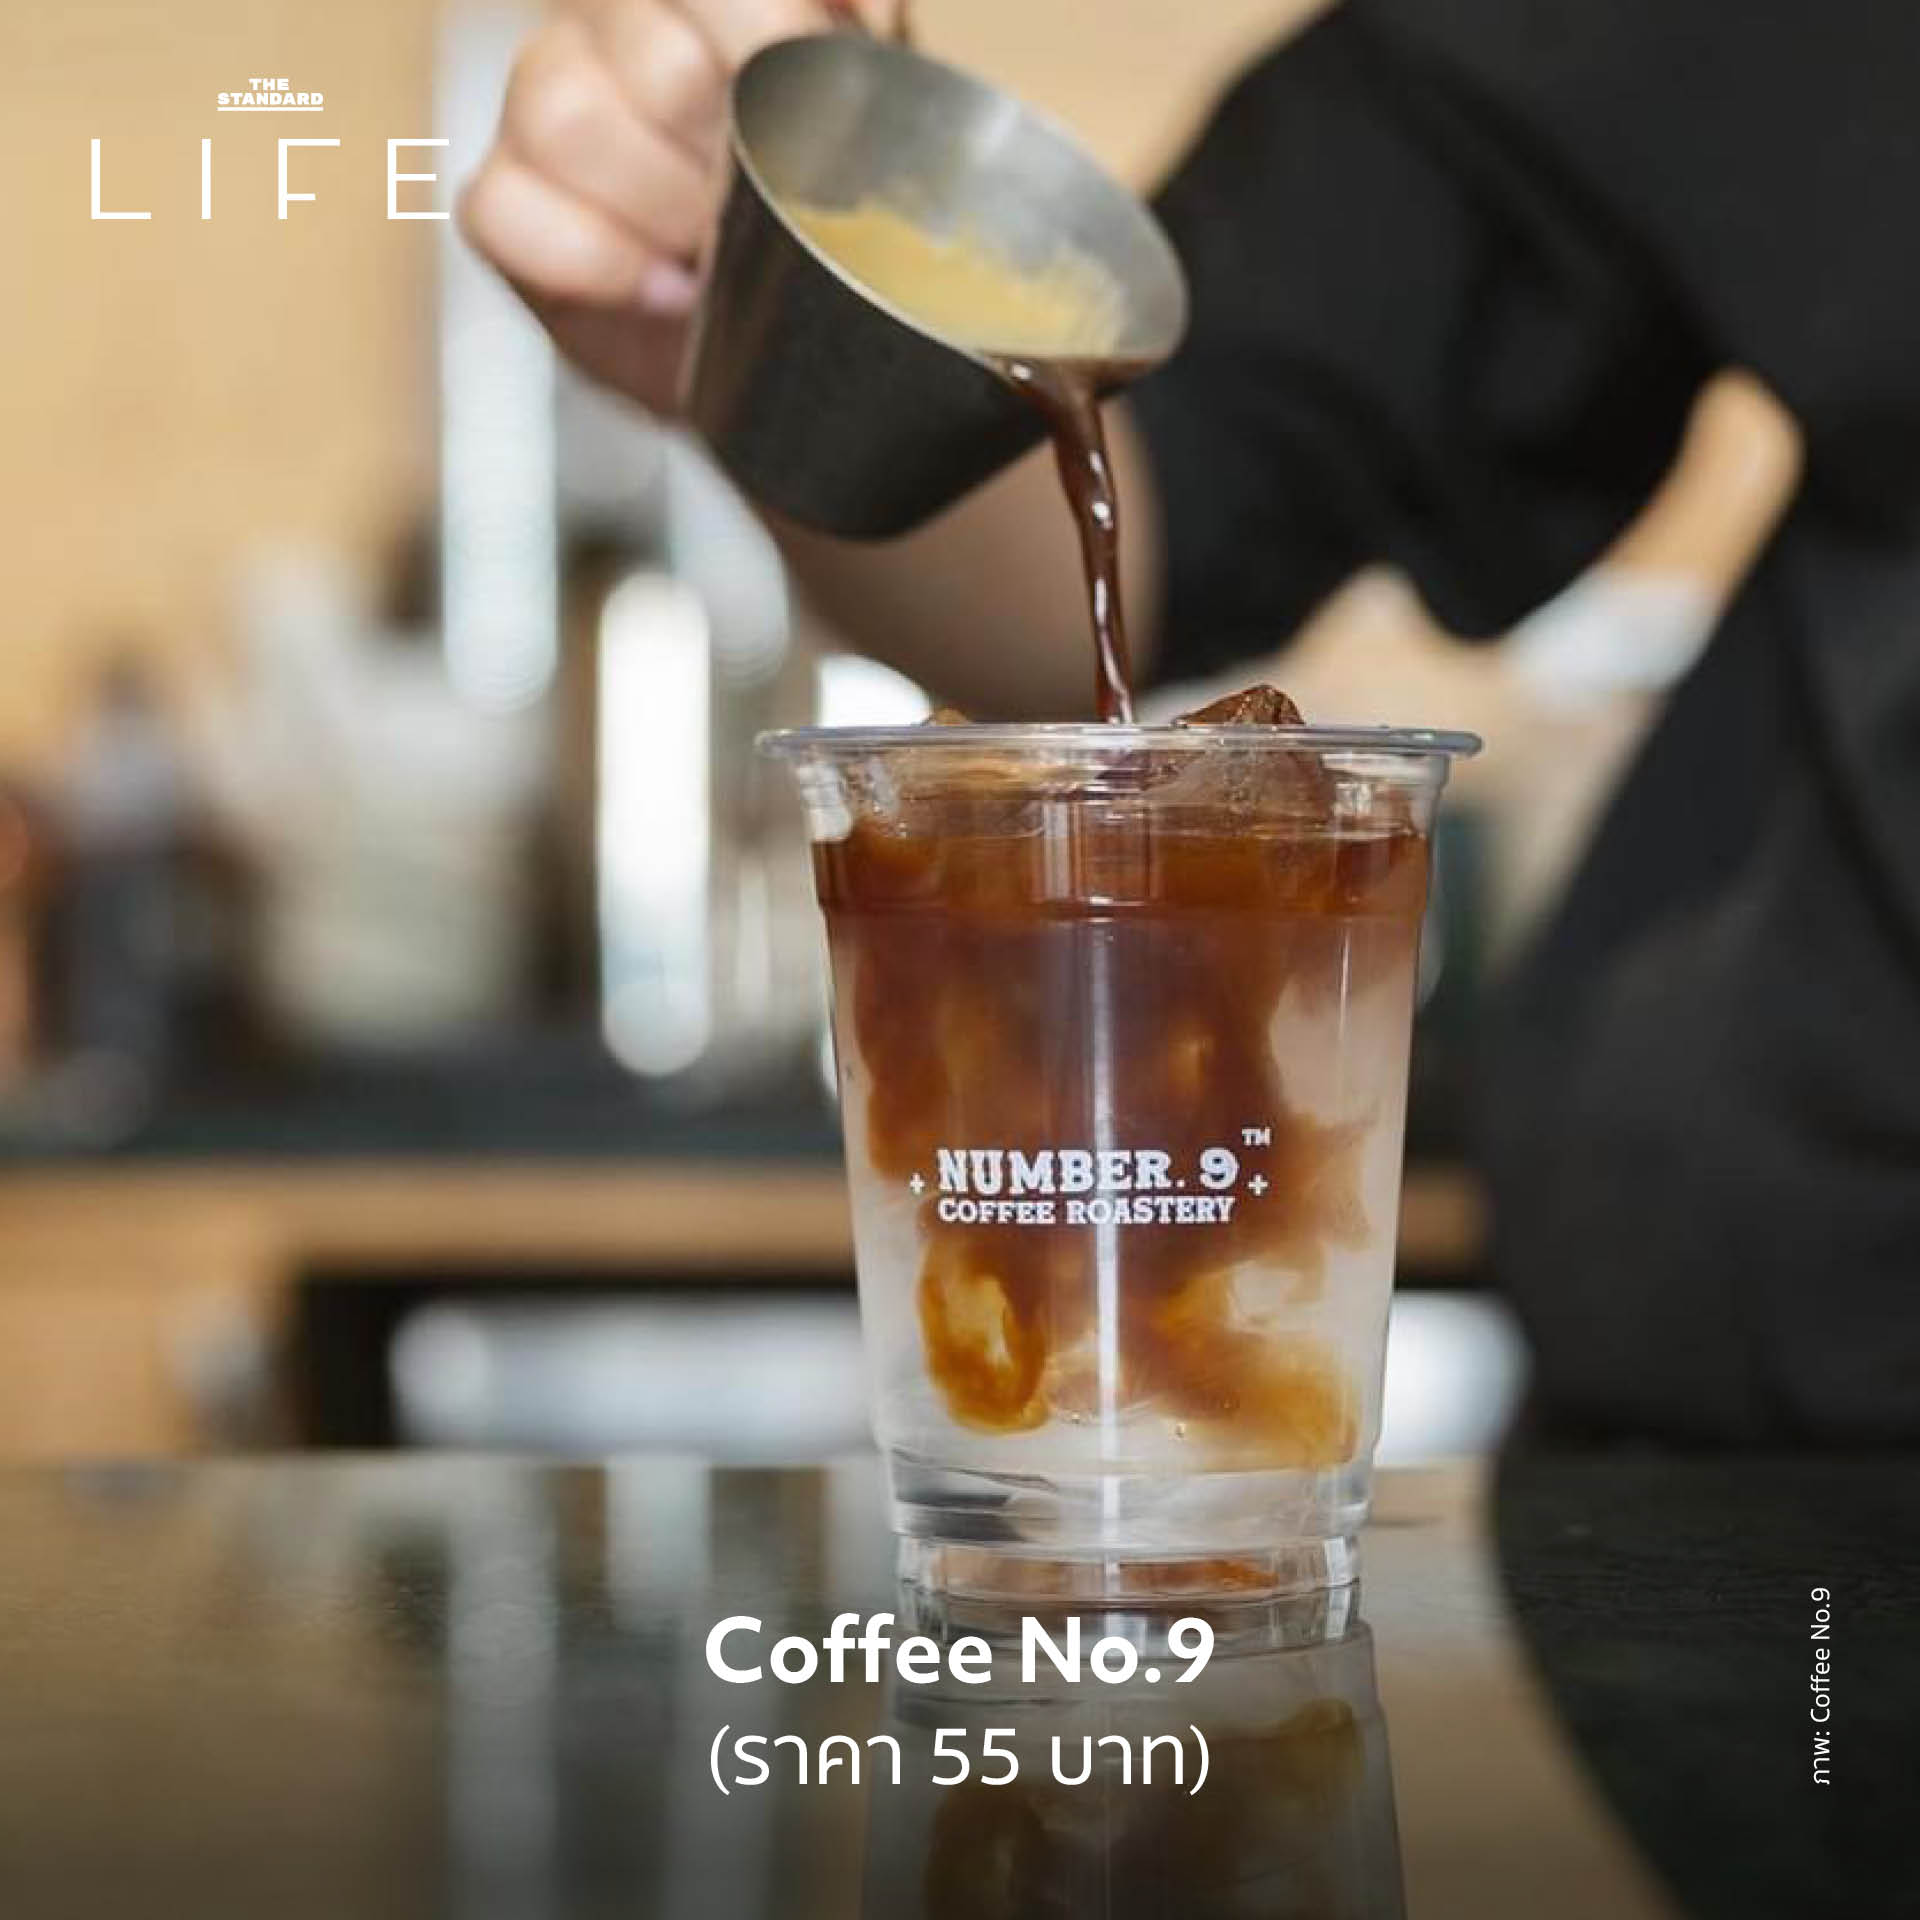 กาแฟถูกเทใส่แก้วที่มีน้ำและน้ำแข็ง ร้าน Coffee No.9